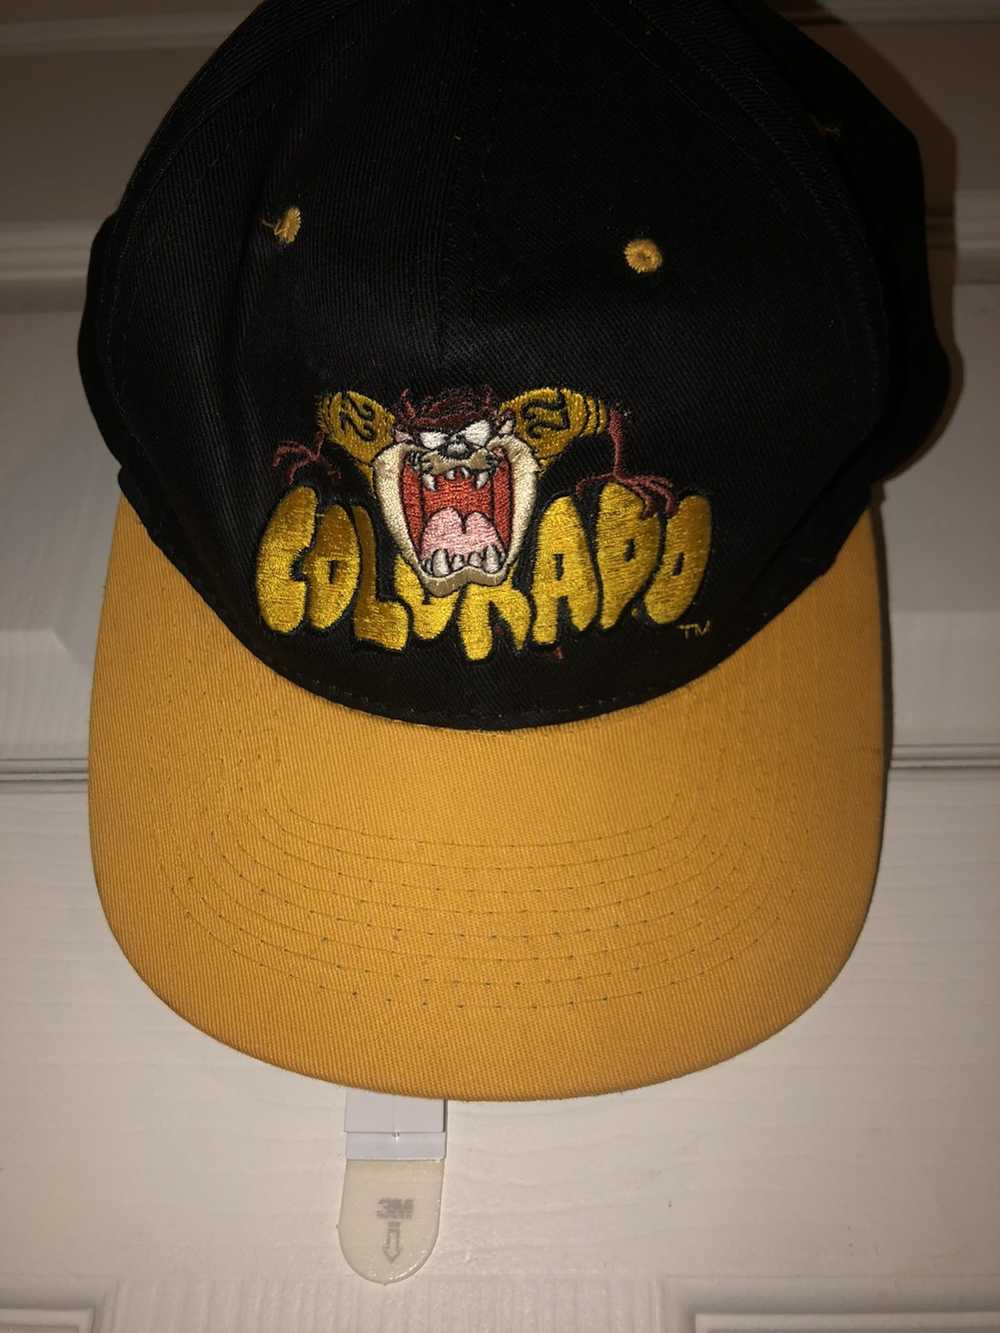 Vintage × Warner Bros Looney tunes hat - image 1